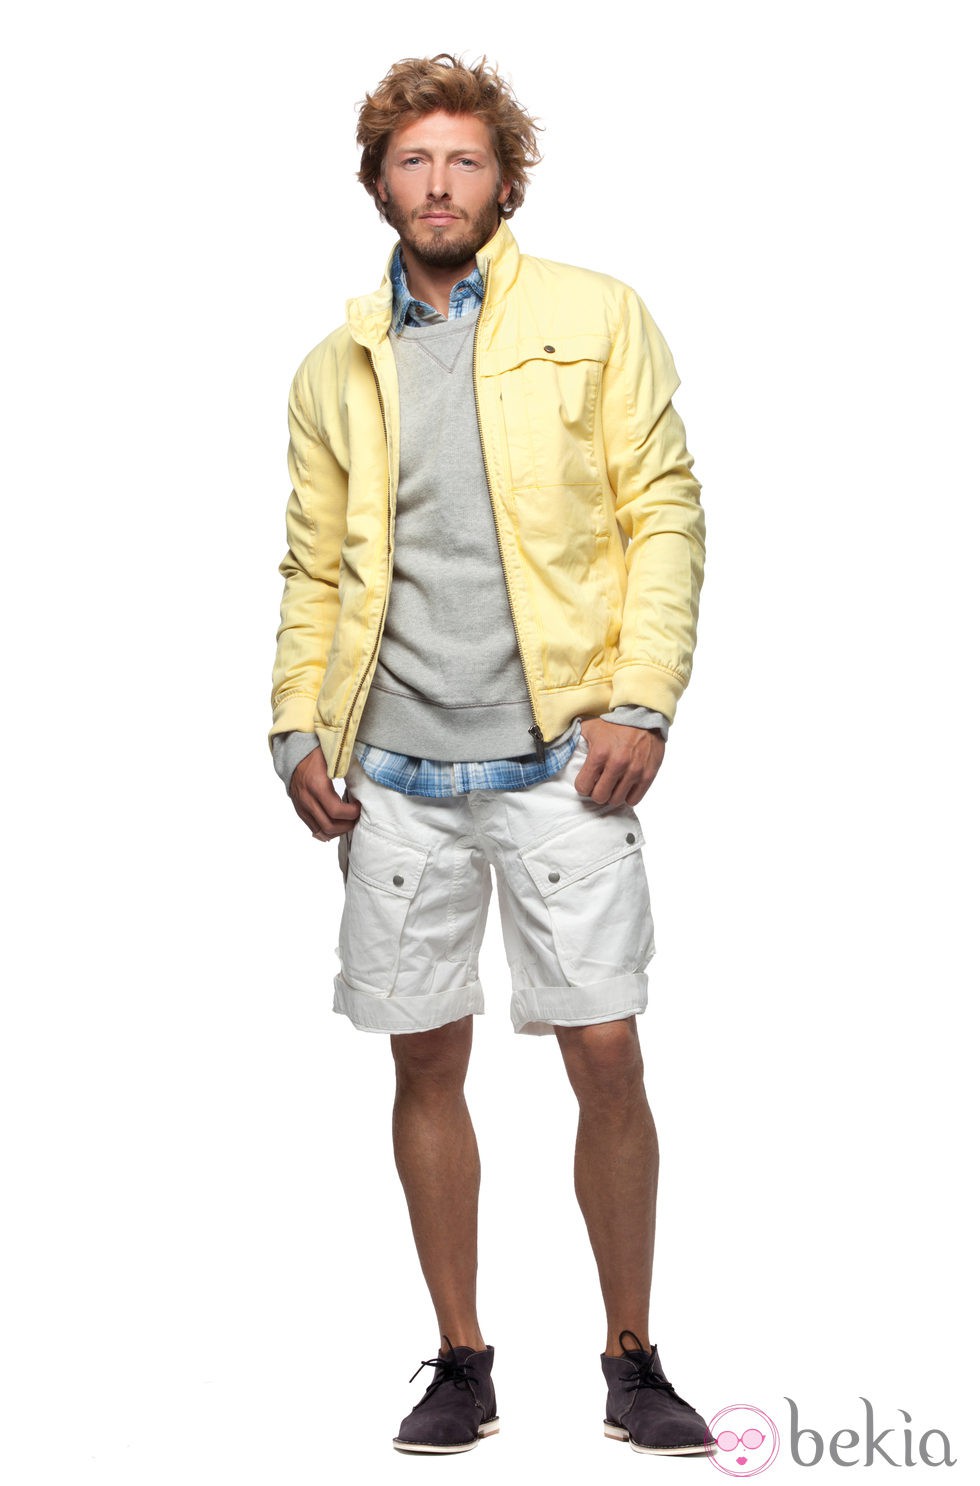 Chaqueta amarilla, jersey gris y pantalon blanco de la colección verano 2012 de Chevignon